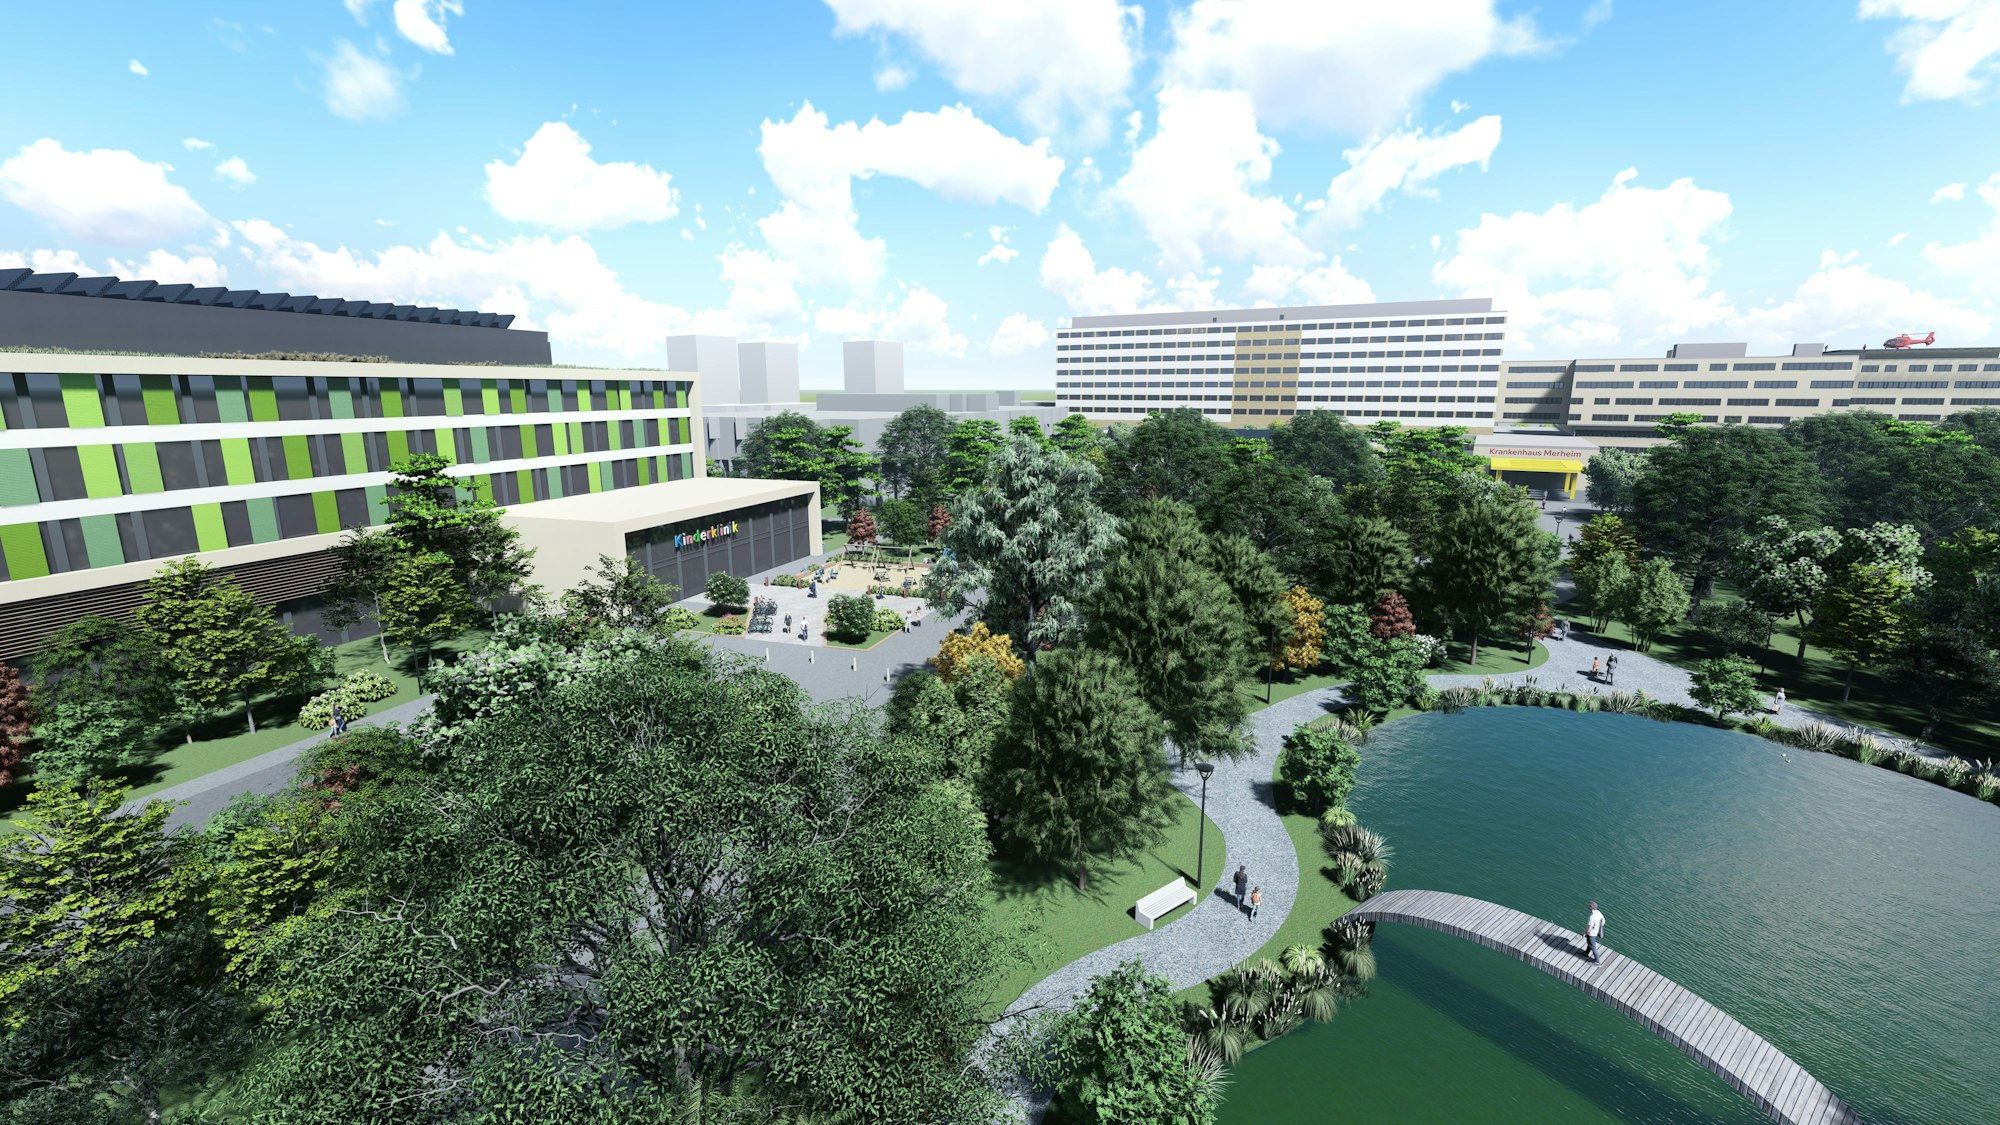 Die Visualisierung zeigt den neuen Campus in Merheim, rund um einen See sind Bäume und Gebäude zu sehen.